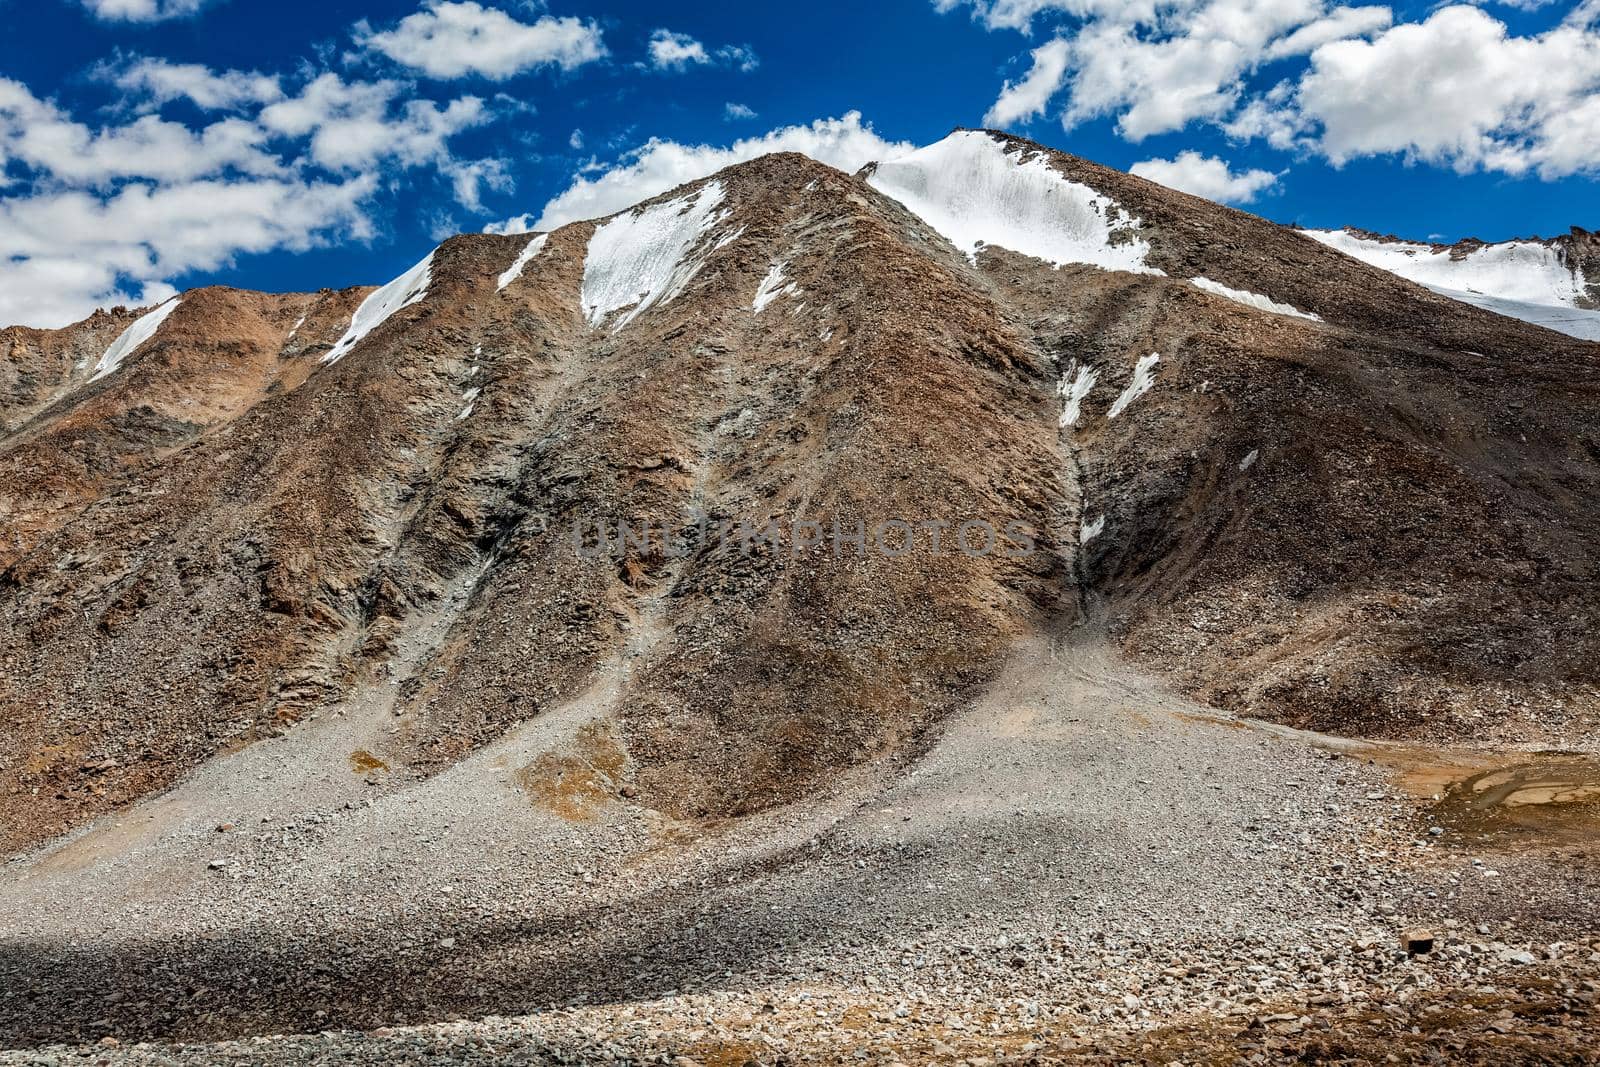 View of Himalayas near Kardung La pass. Ladakh, India by dimol